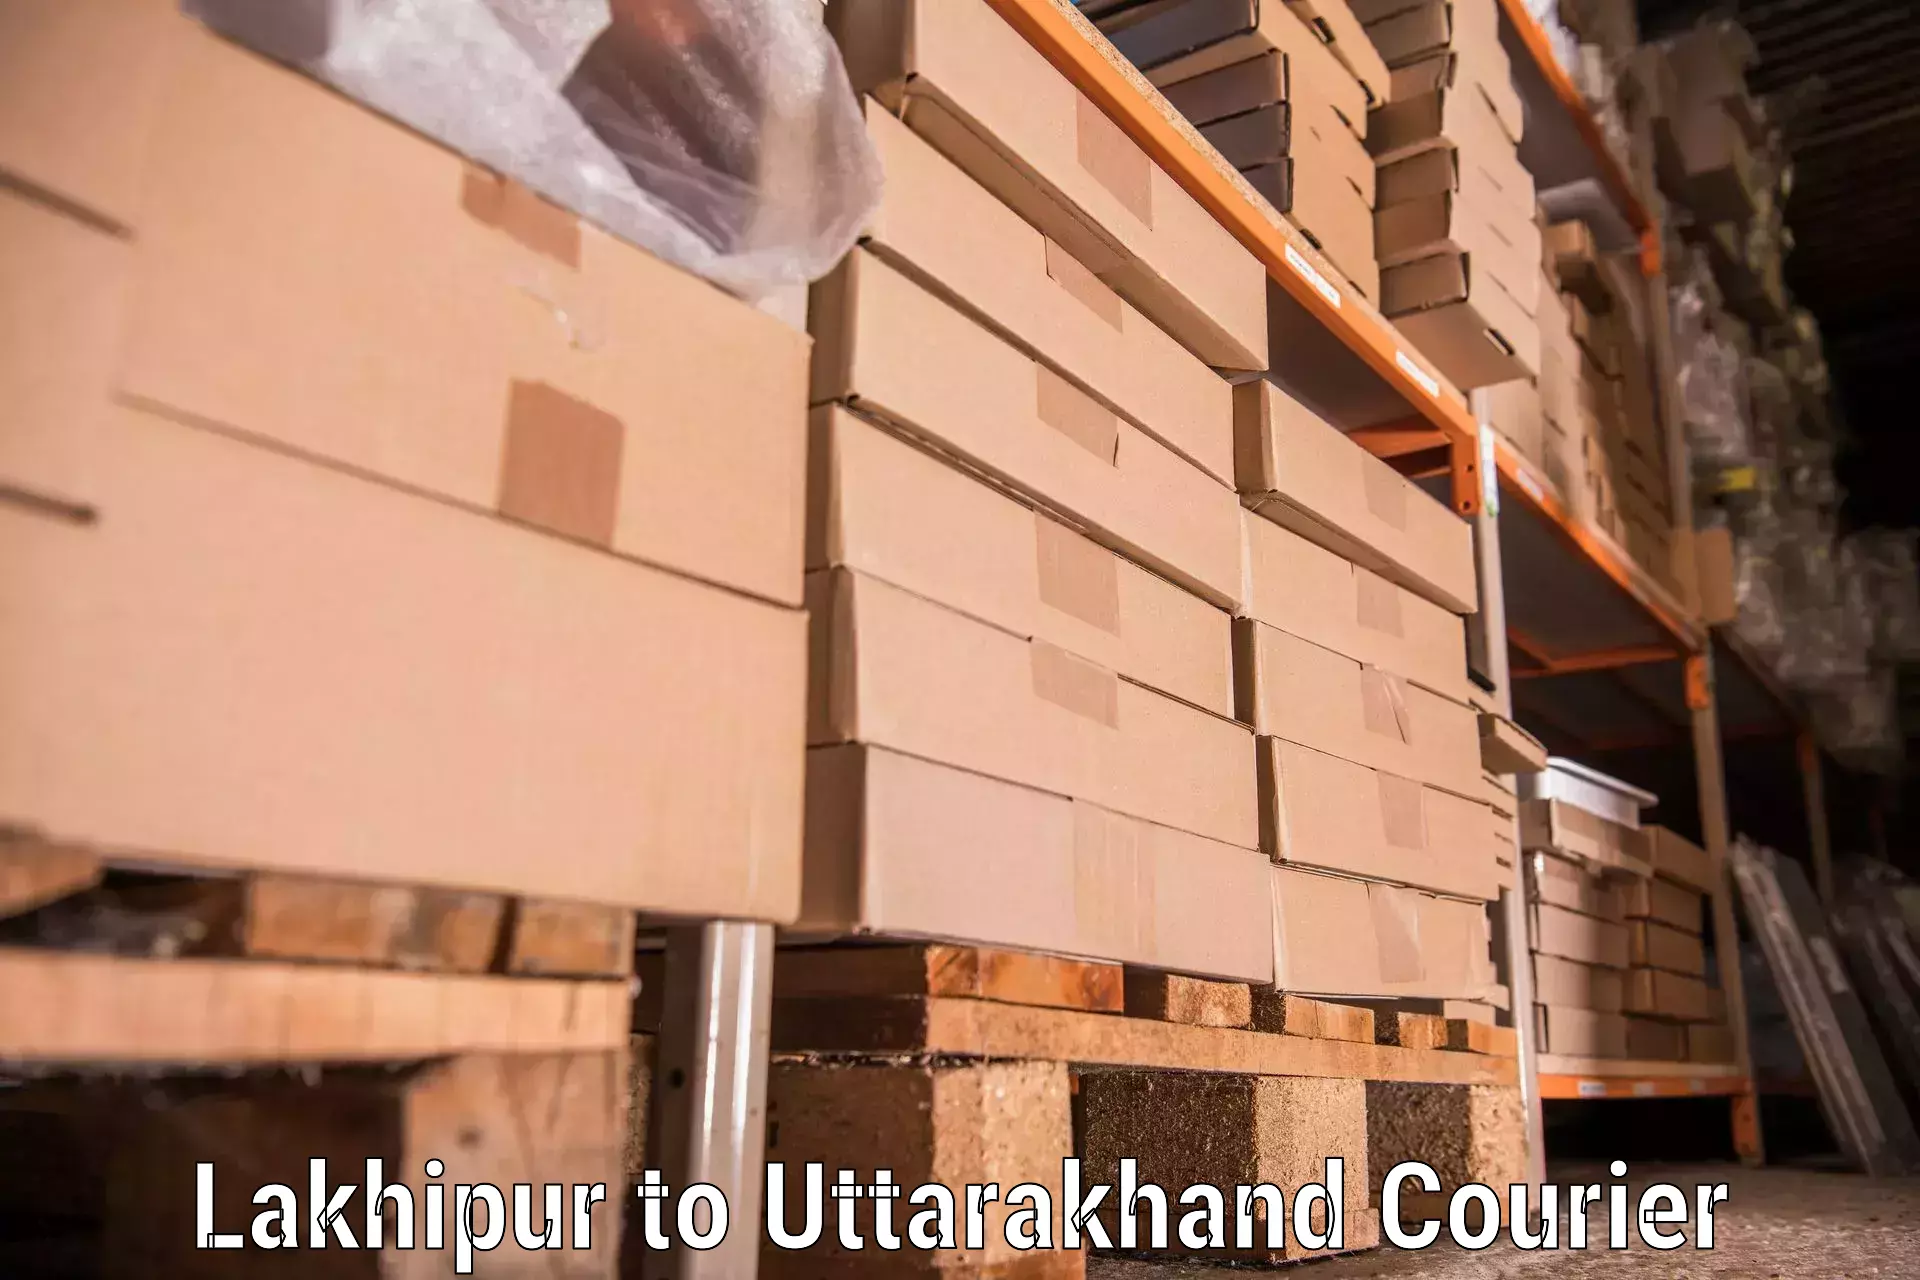 Furniture moving experts Lakhipur to Gopeshwar